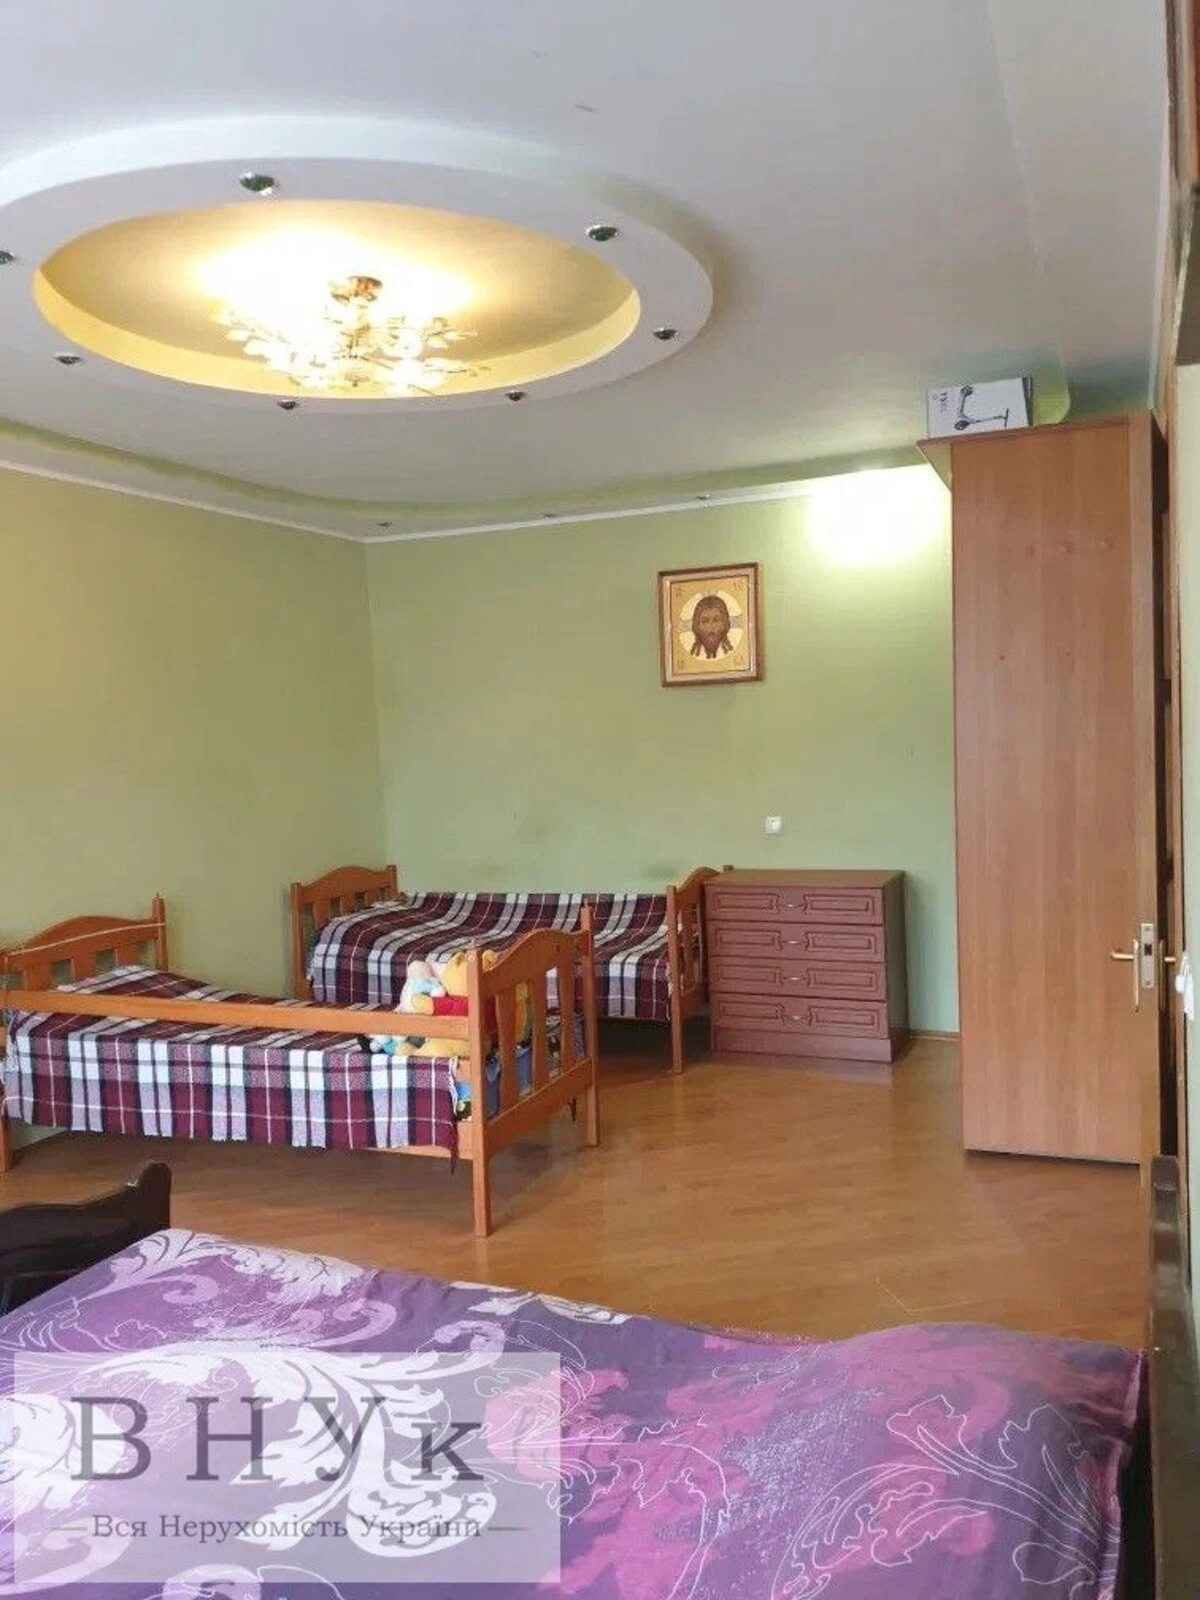 Apartments for sale. 1 room, 51 m², 1st floor/9 floors. Pluhova vul., Lviv. 